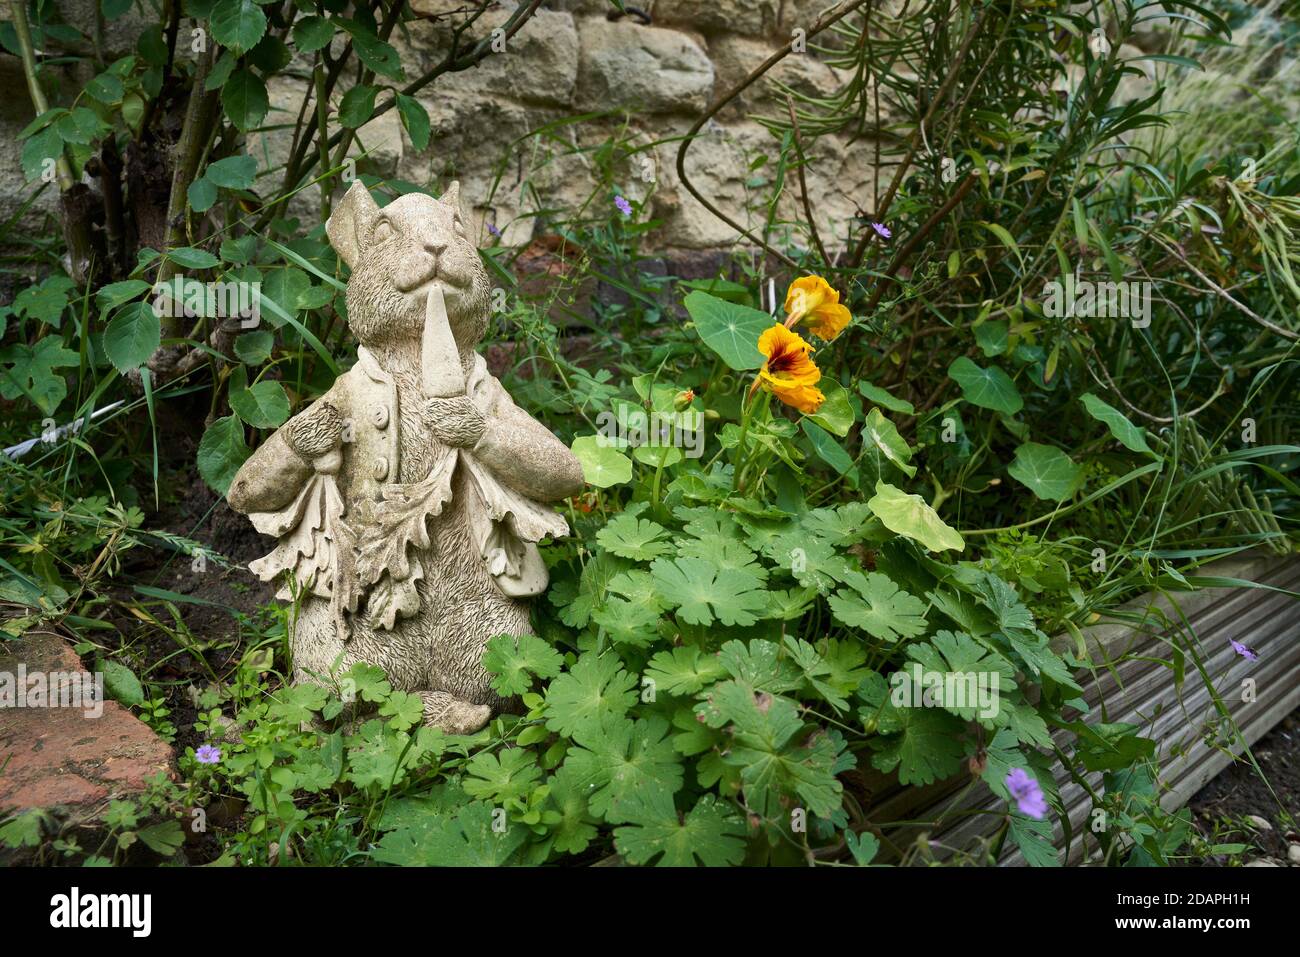 Escayola estatua de hormigón del jardín del personaje Peter Rabbit comer una zanahoria en un borde de jardín sobre una piedra pared Foto de stock